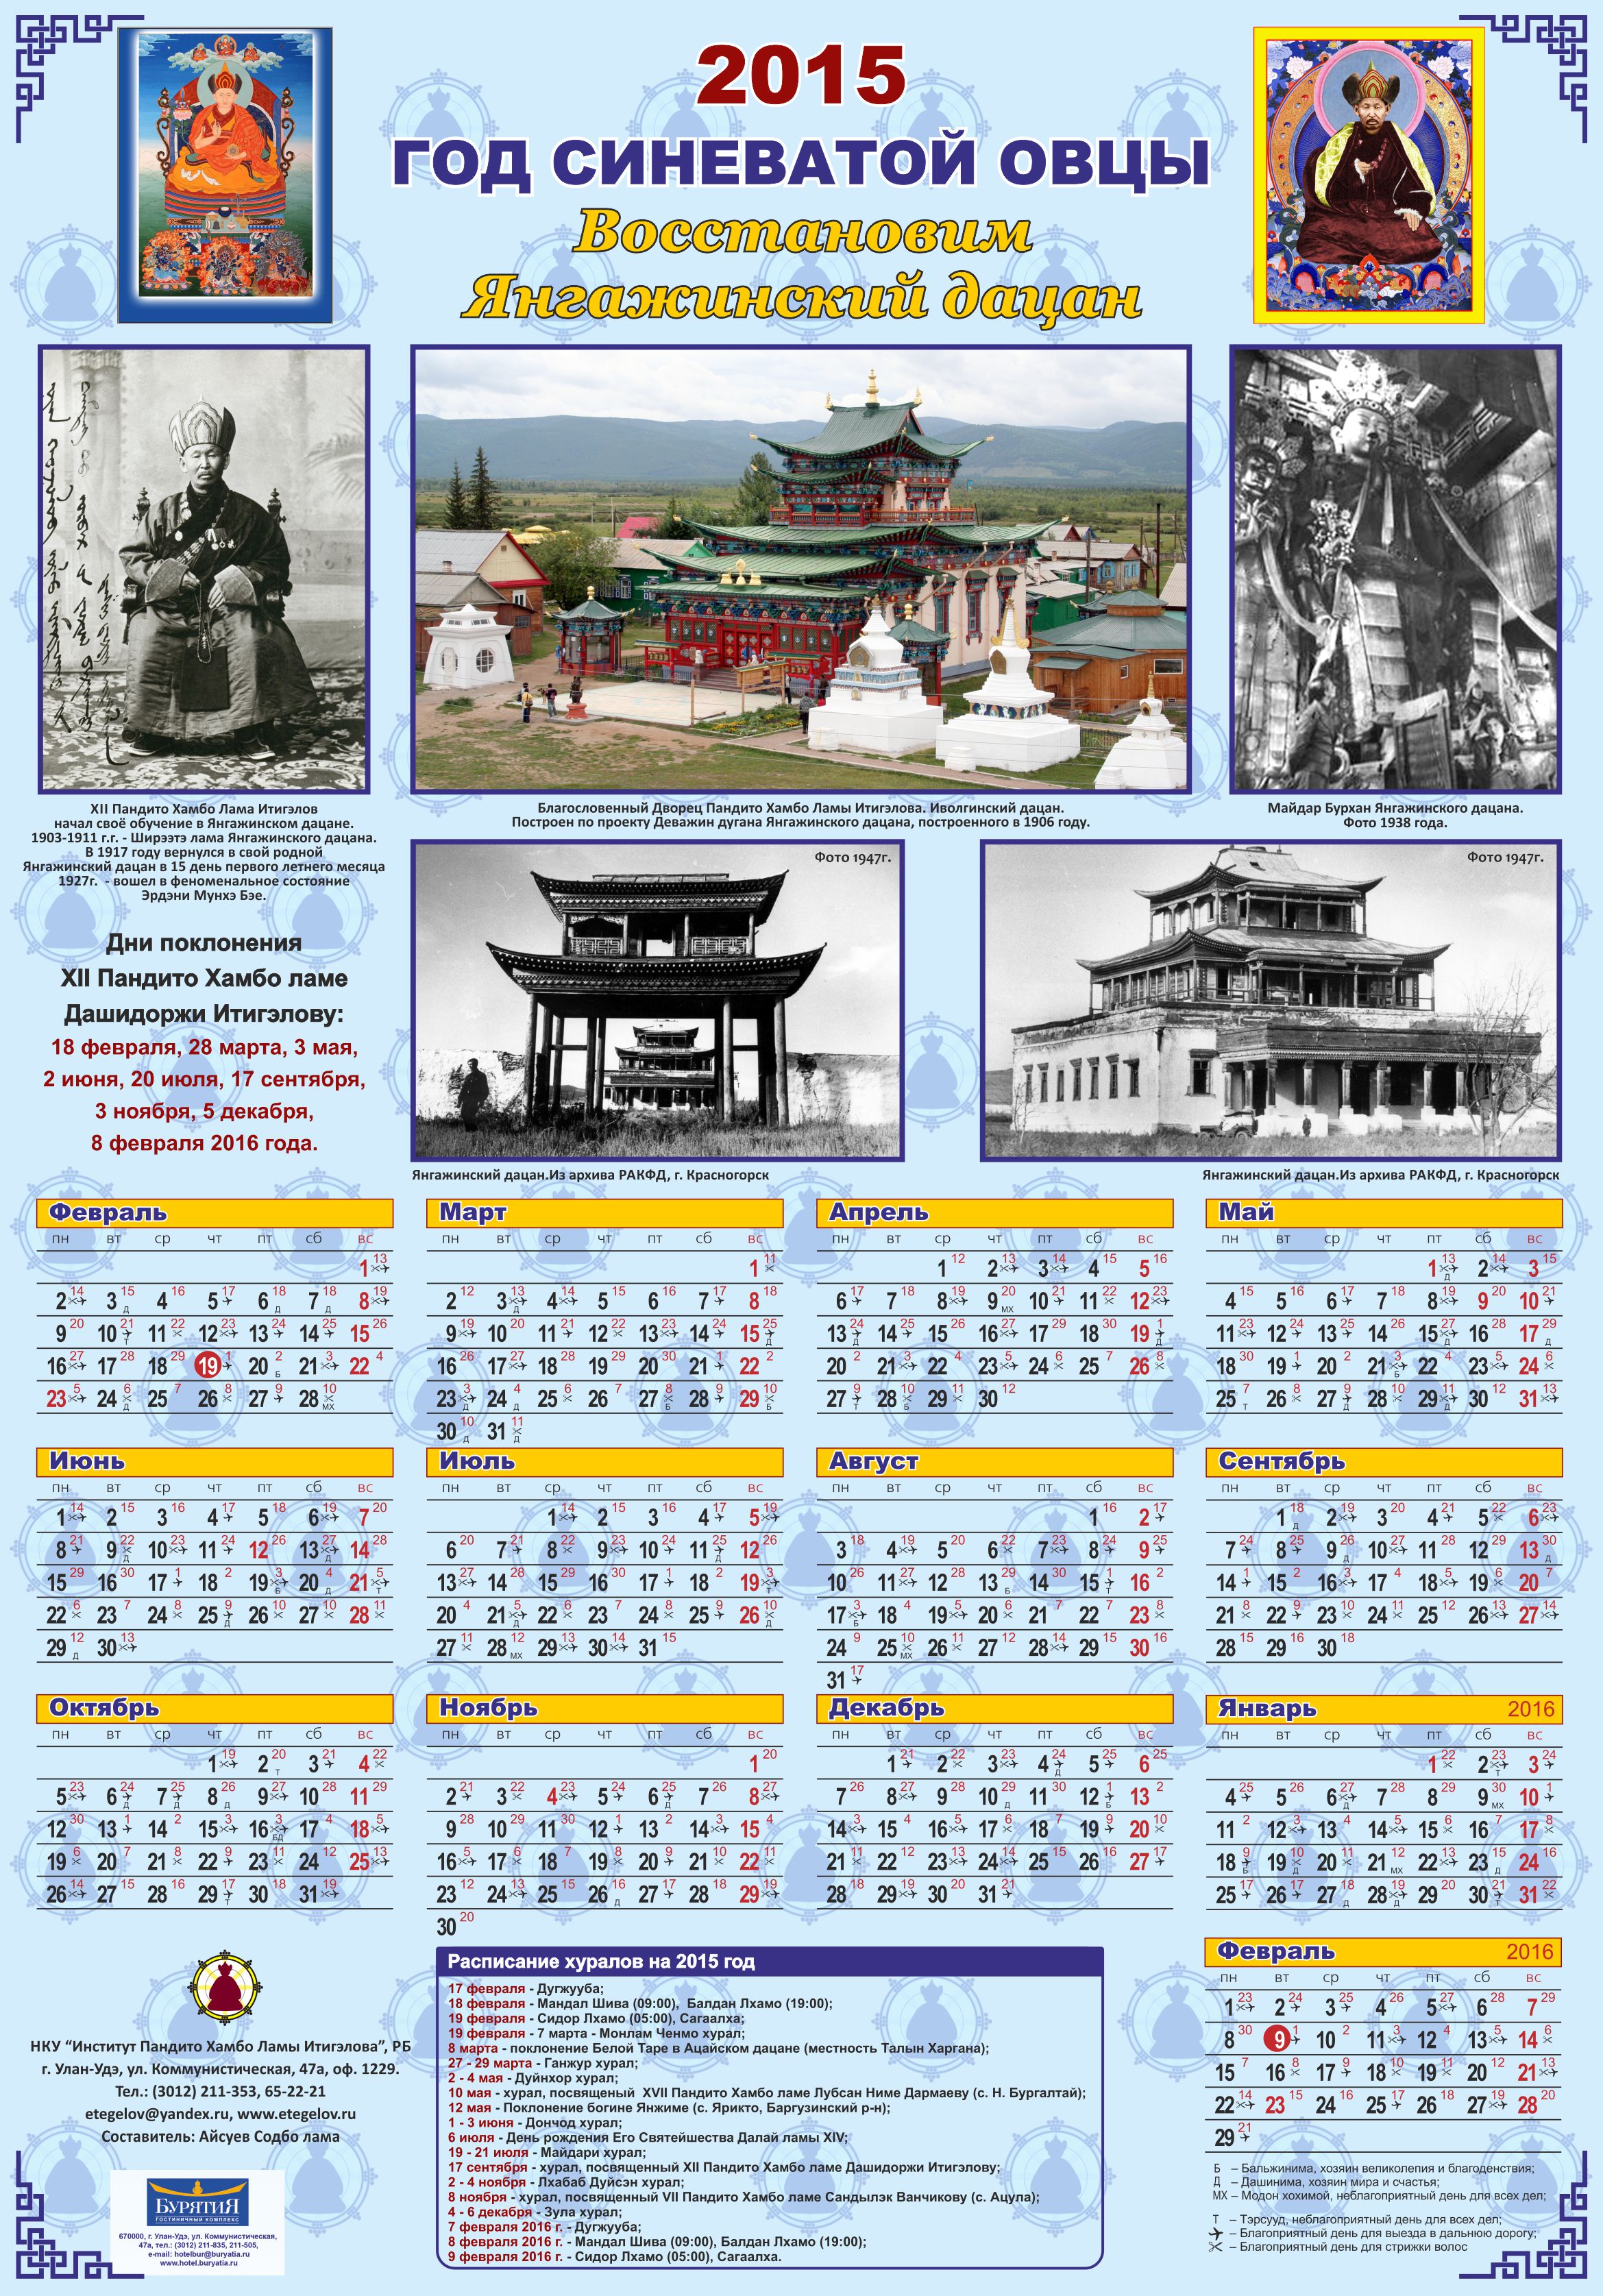 Kalendar-2015